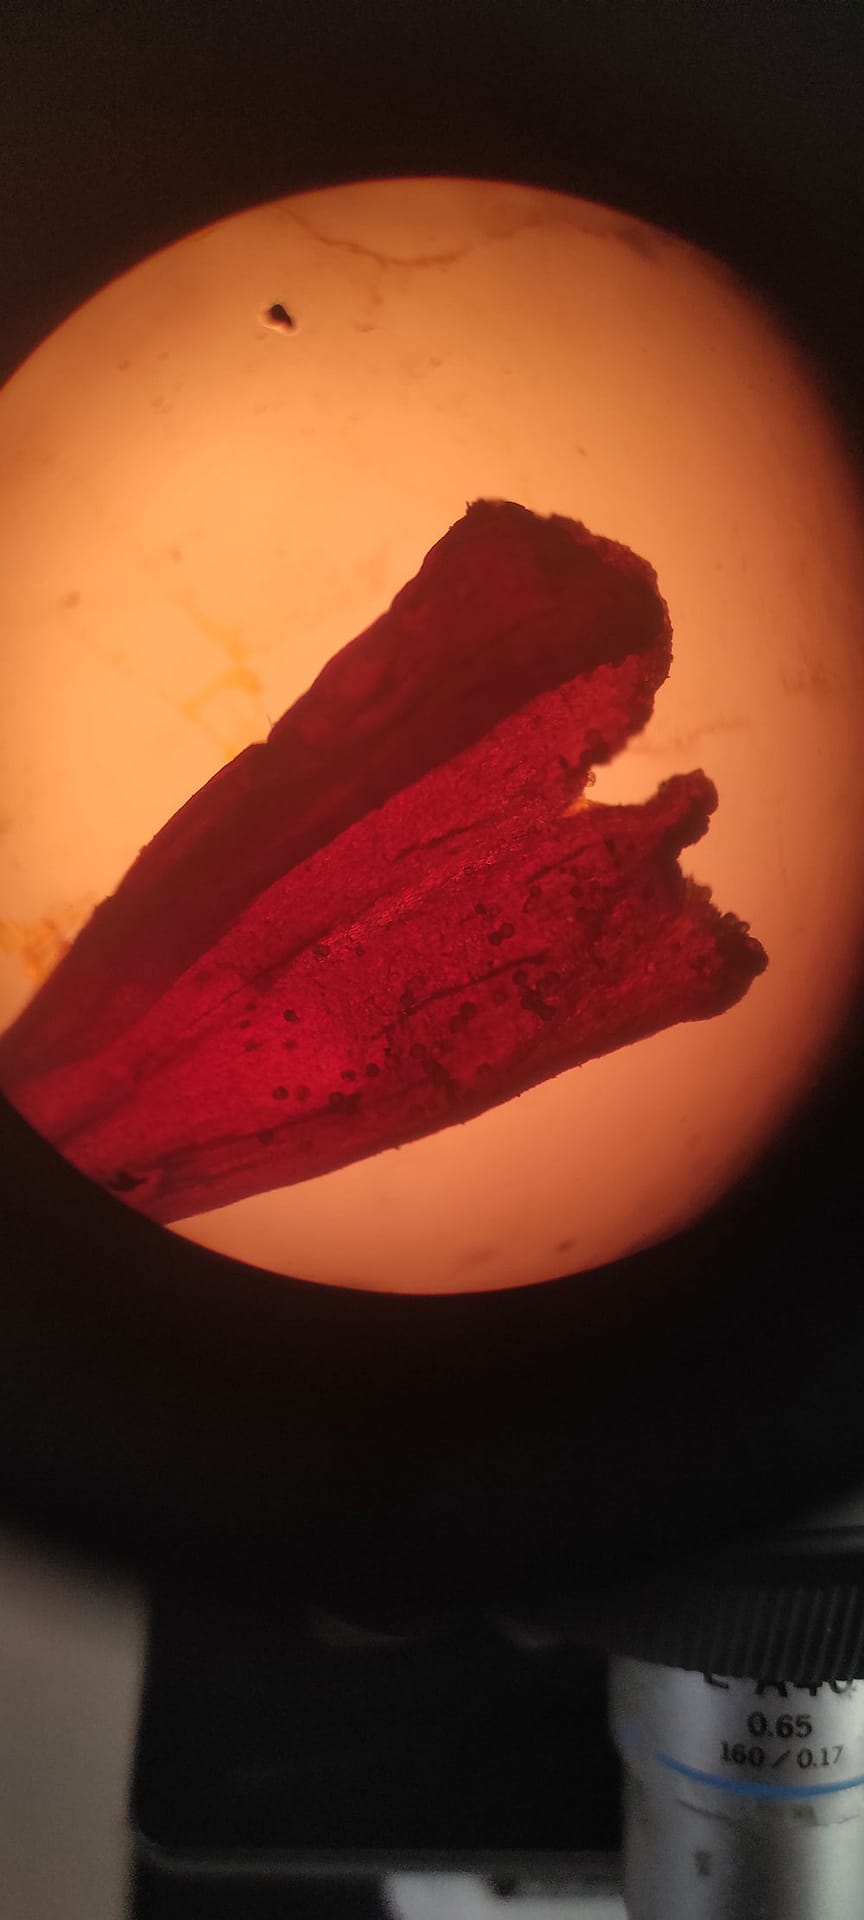 saffron-under-the-microscope-01